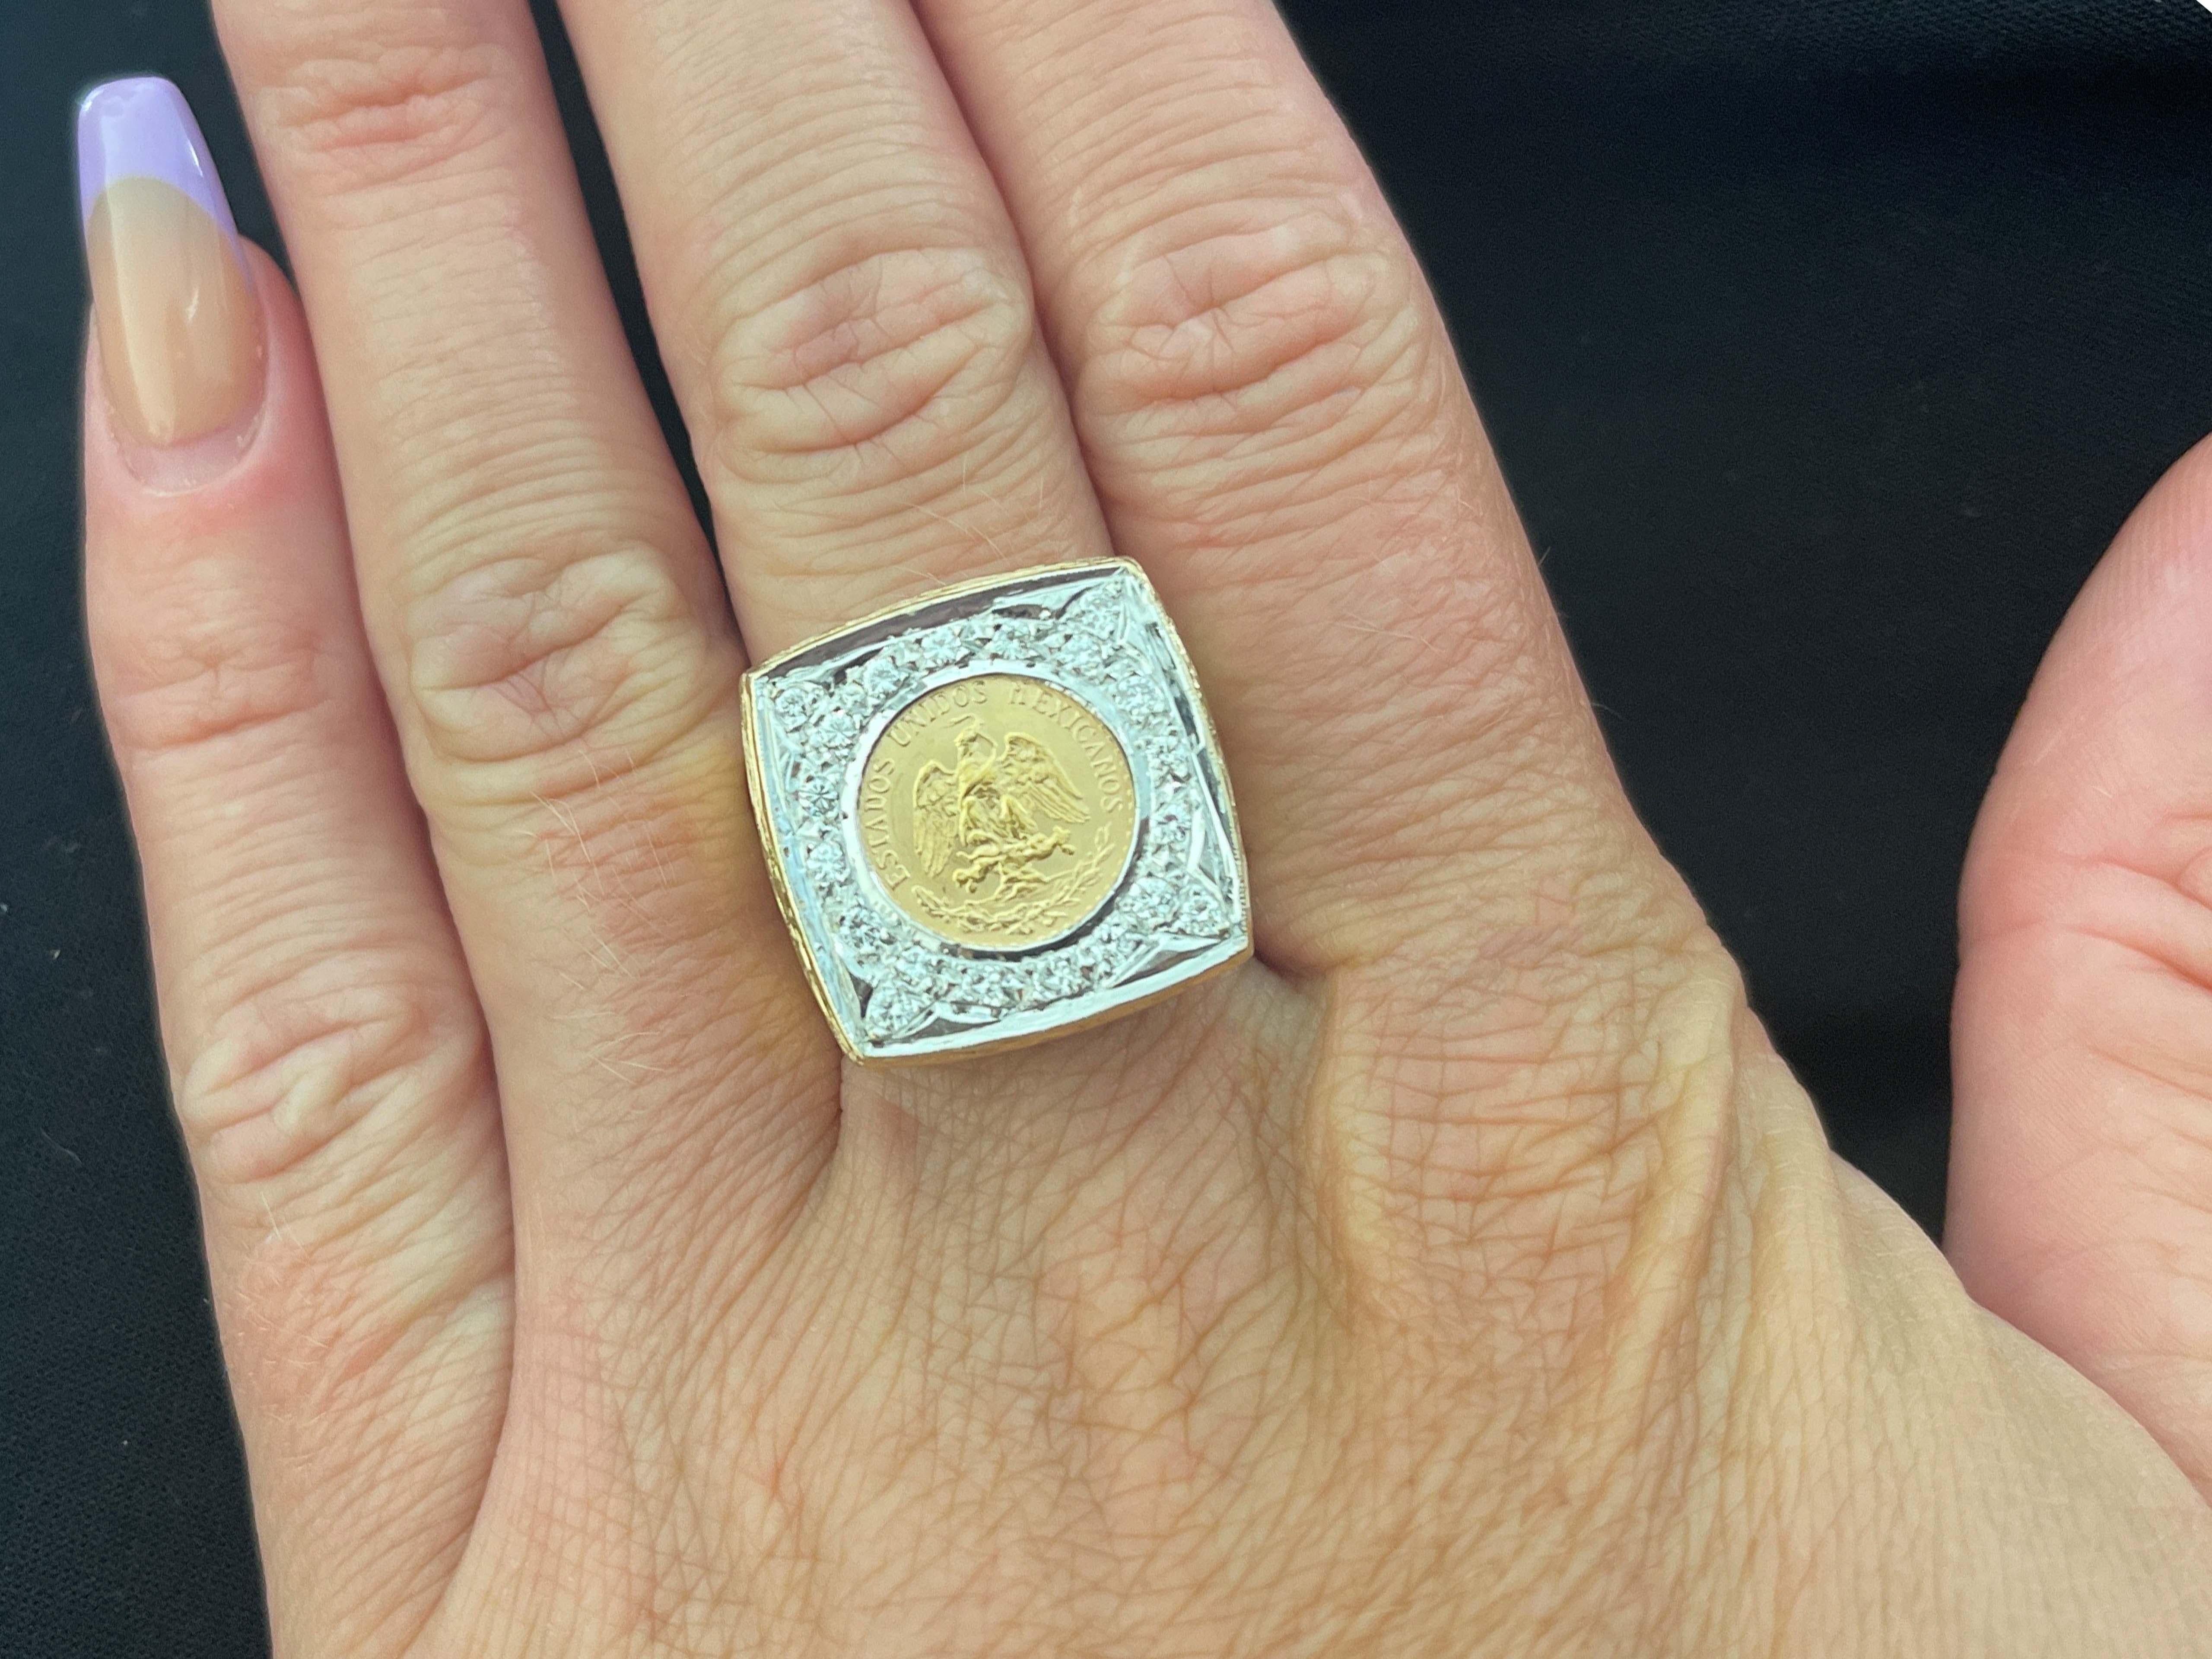 Herren Gold 2,00 mexikanische Peso-Münze Pinky Ring, 14K Gelbgold. Größe 9
Vintage Herren 2,00 Gold mexikanischen Peso Coin Ring in 14K Gelbgold. Dieser schöne Ring zeigt eine mexikanische 2,00 (Dos Pesos) Goldmünze aus dem Jahr 1945 mit einer